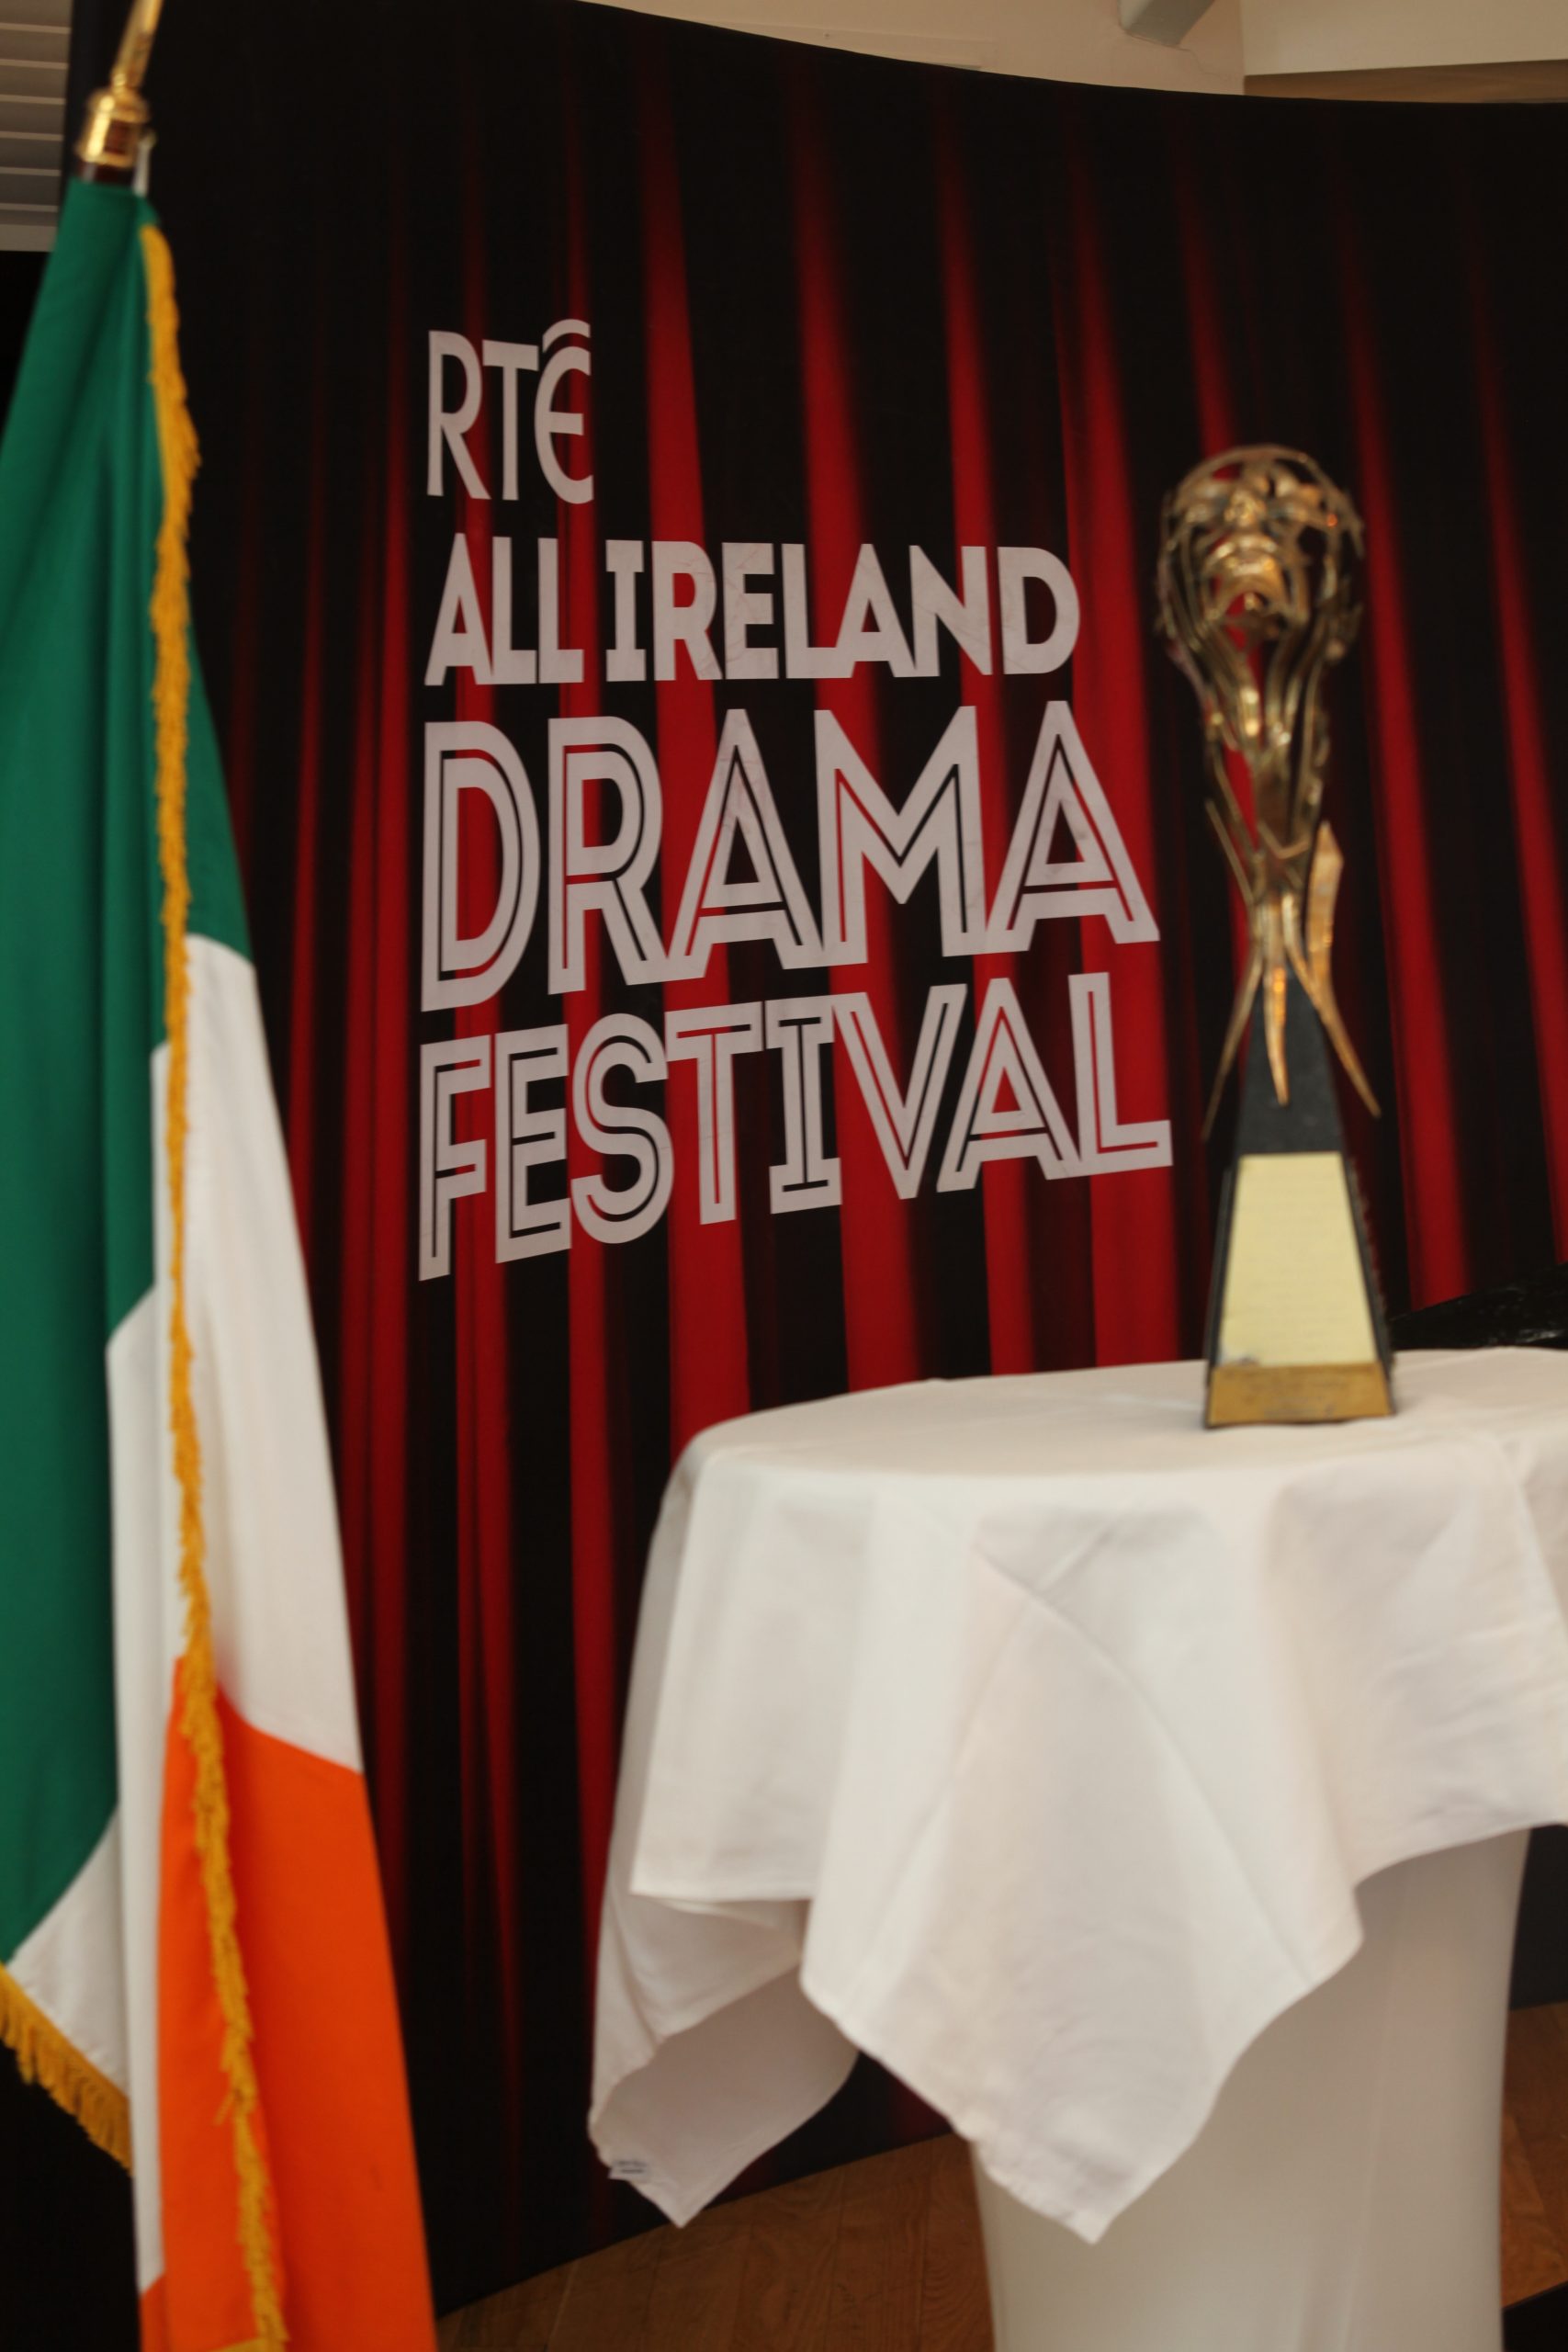 Drama Festival Trophy and Irish Flag